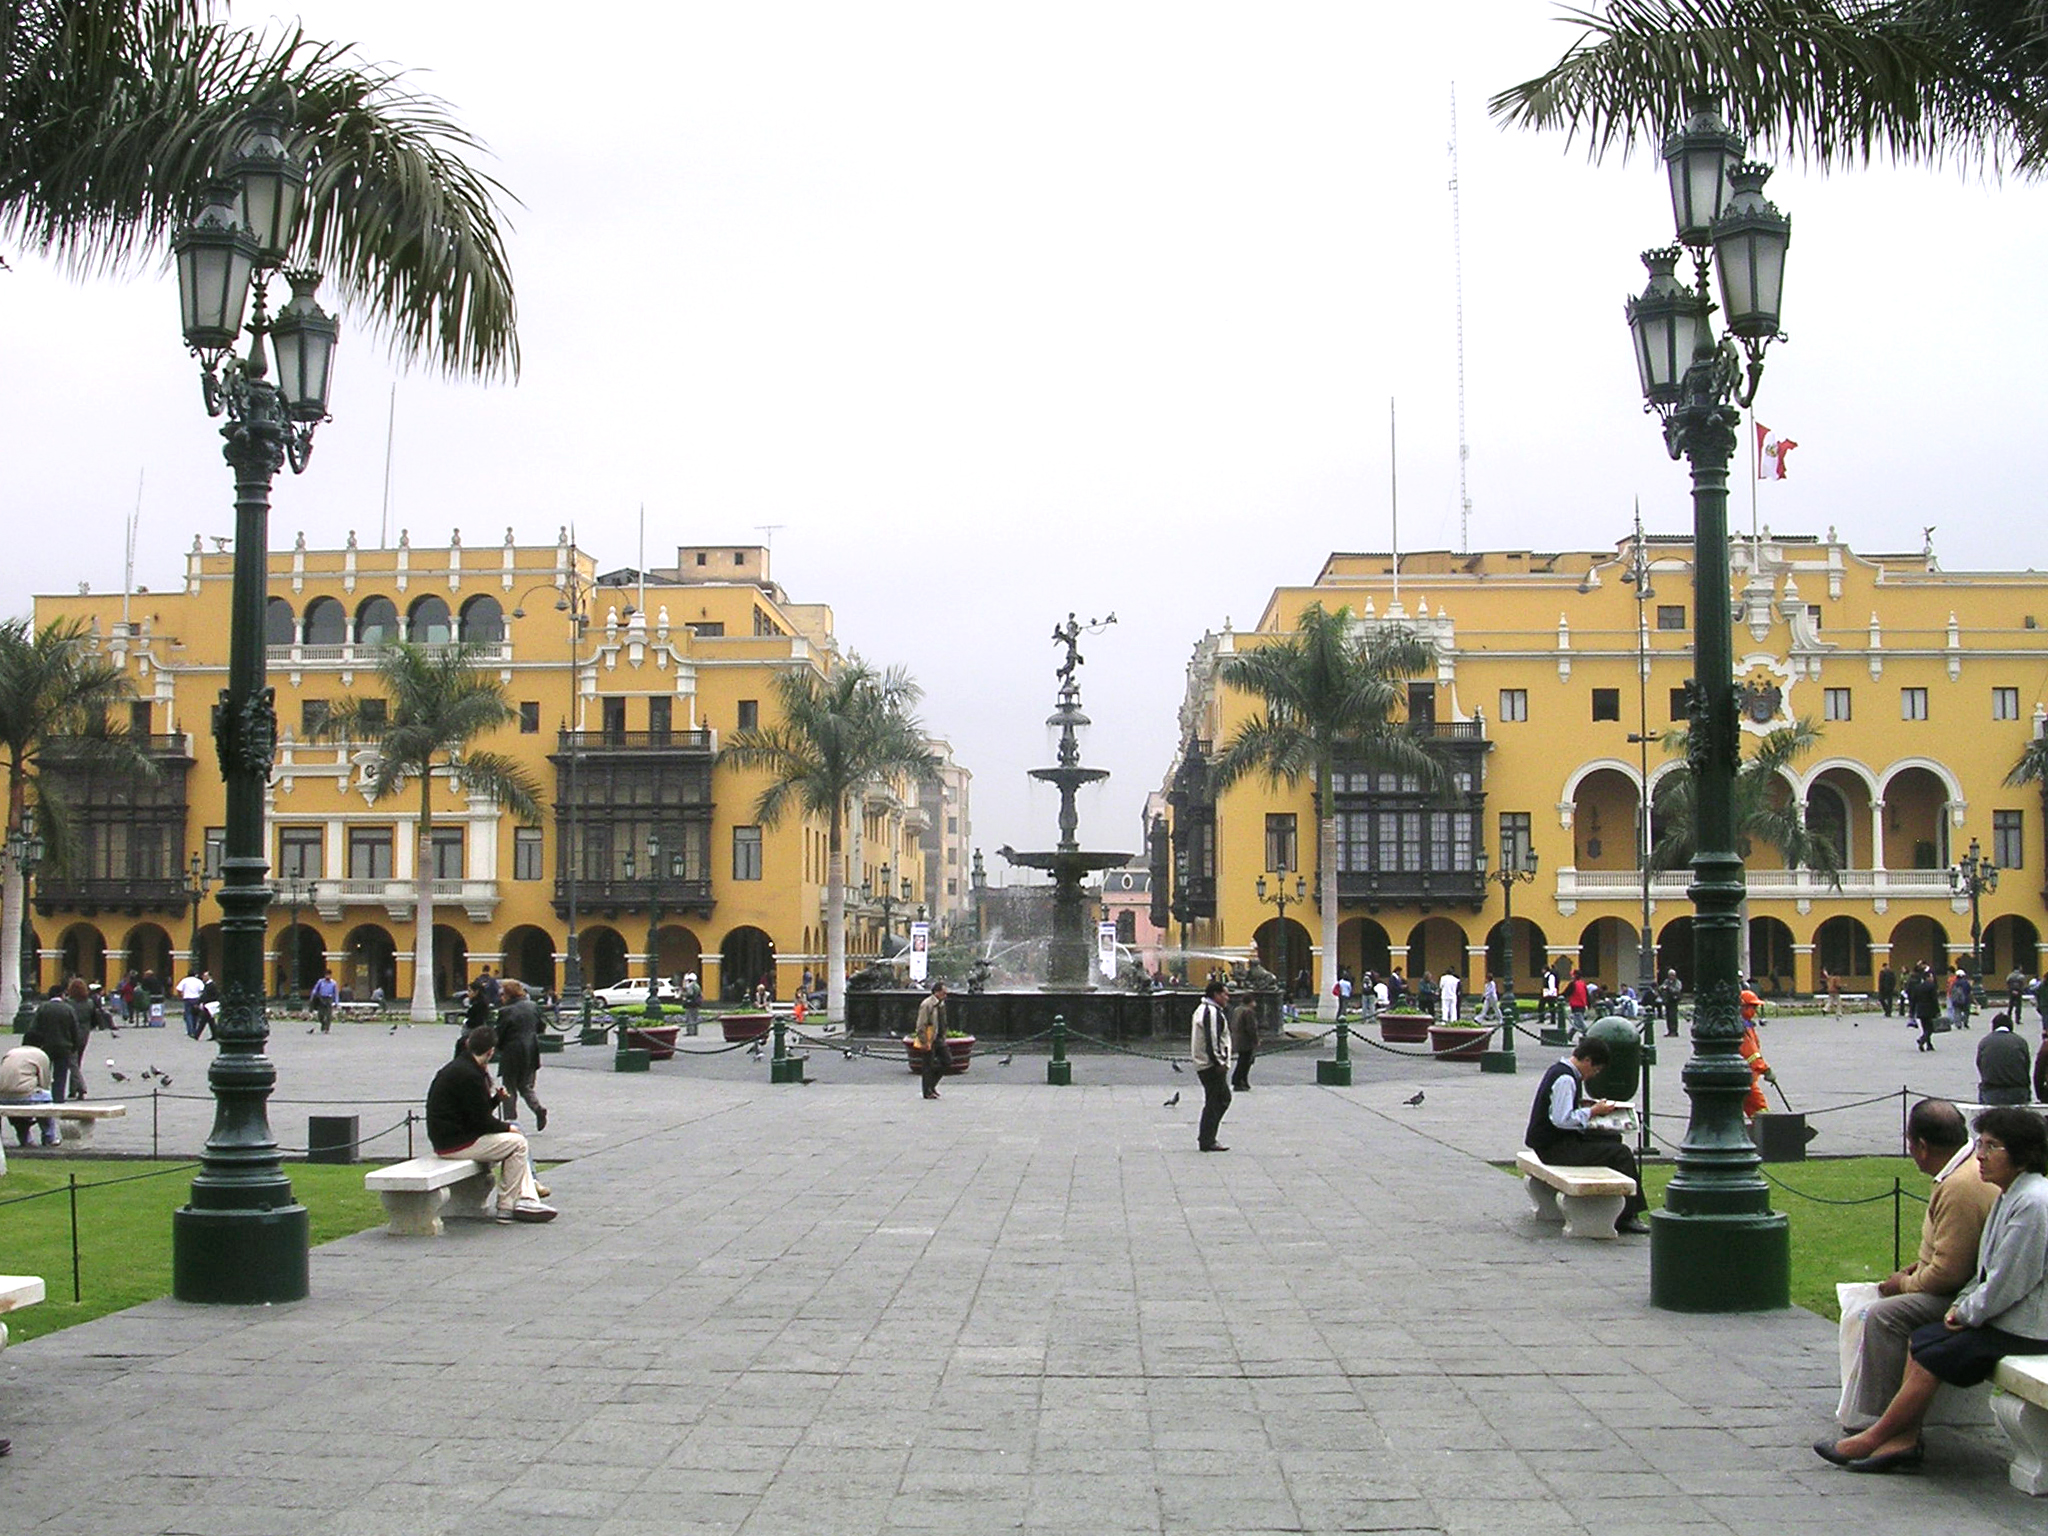 مركز ليما التاريخي مدرج على قائمة اليونسكو للتراث العالمي وهو مركز الحكومــة منذ عام 1535. (ويكيبيديا)